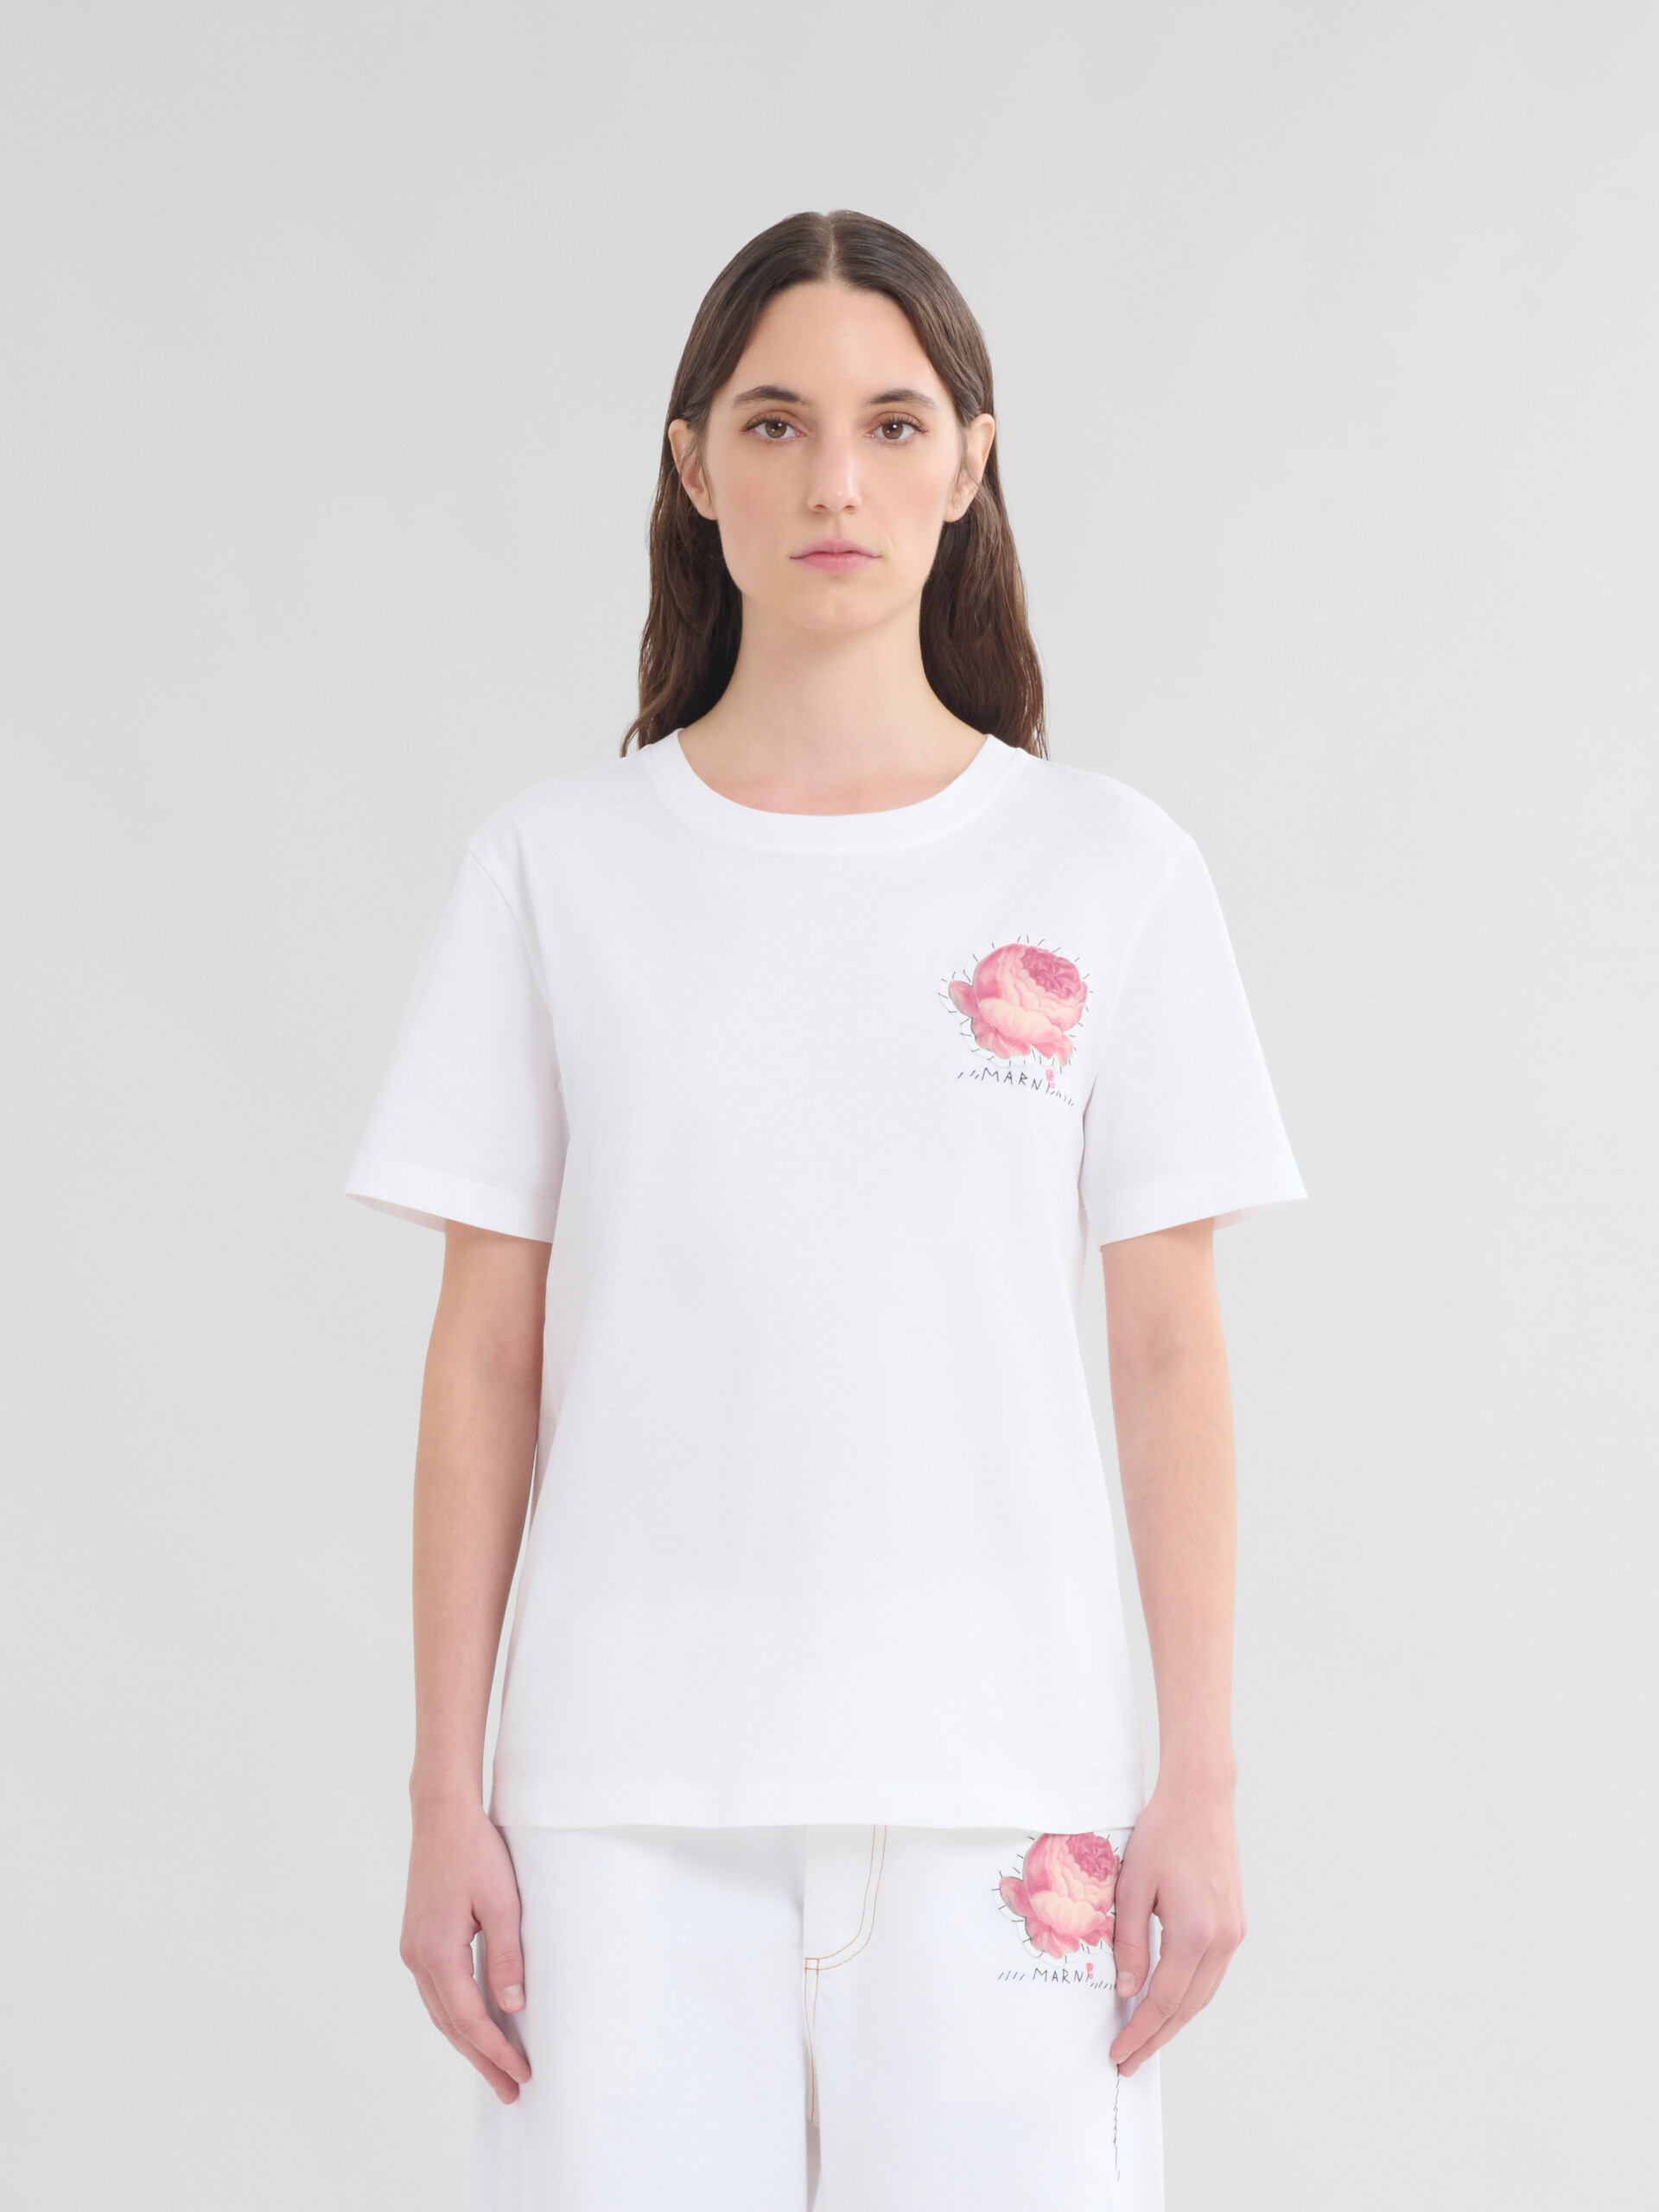 T-shirt in cotone biologico bianco con applicazione a fiore - T-shirt - Image 2